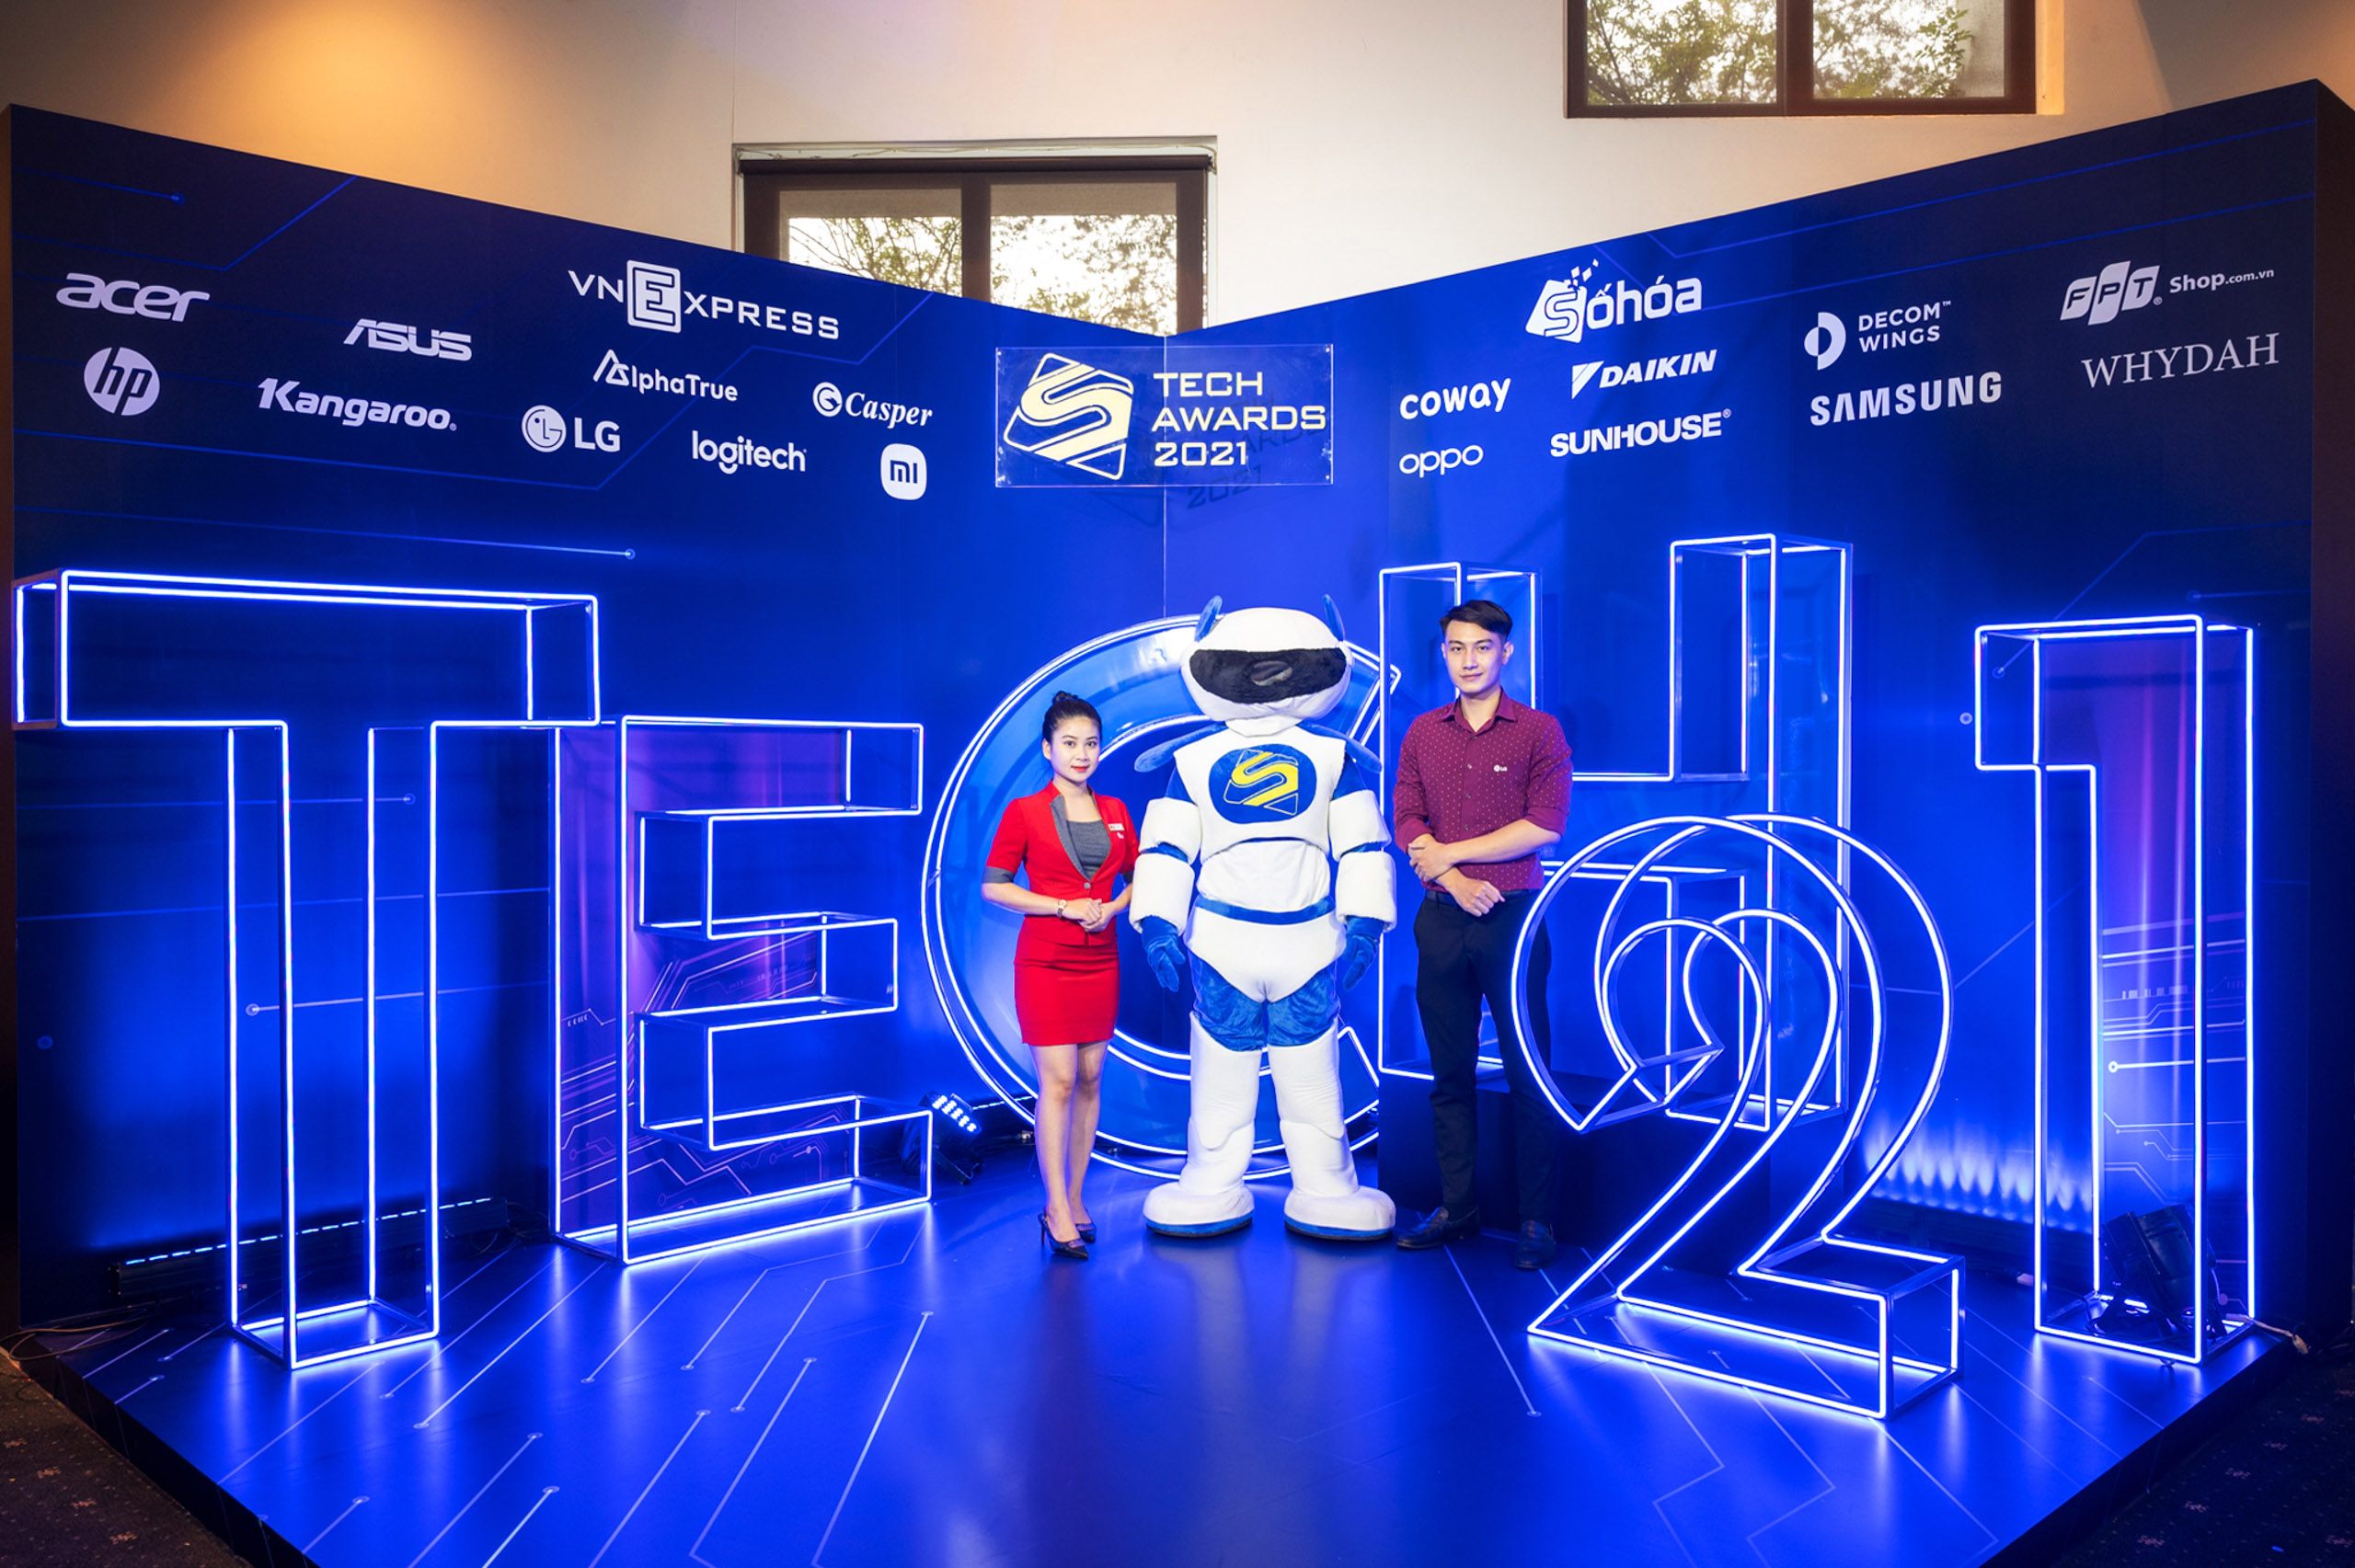 LG liên tục thắng lớn tại Tech Awards 2021 với 5 hạng mục